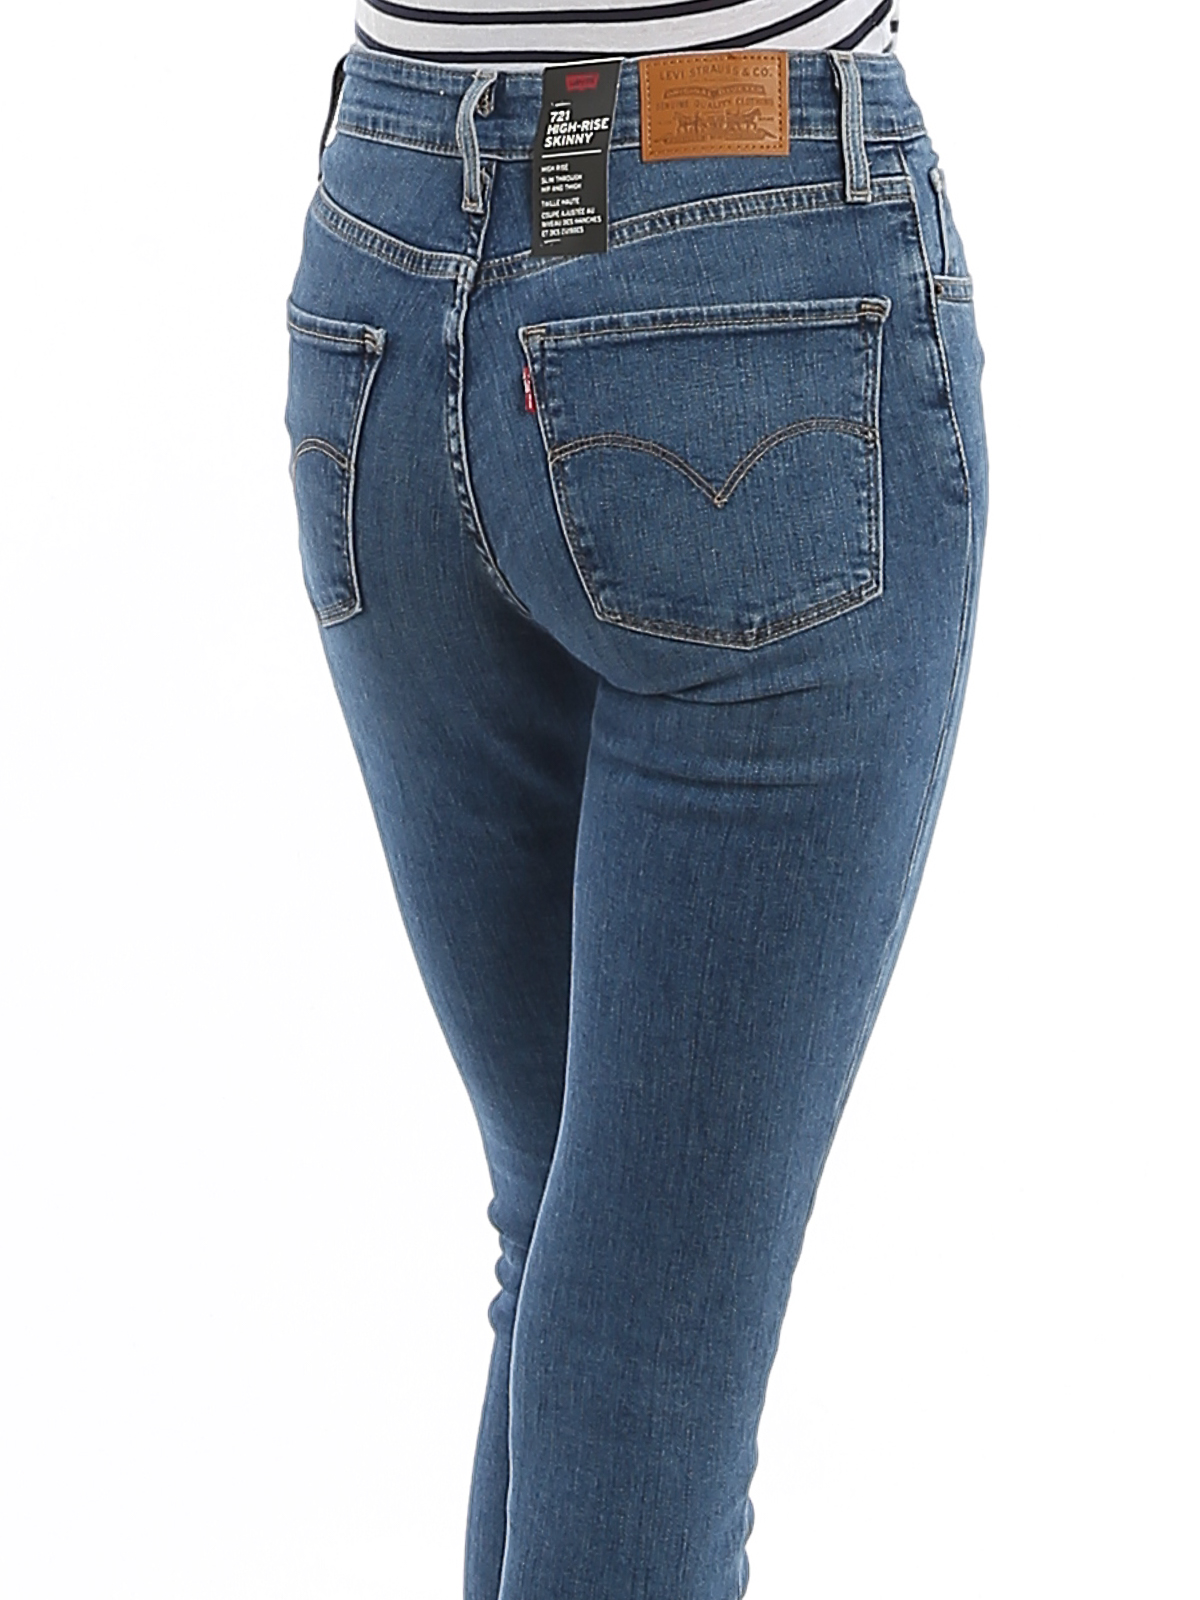 Wonder Overname Deter Skinny jeans Levi'S - 721 denim jeans - 188820331 | Shop online at iKRIX